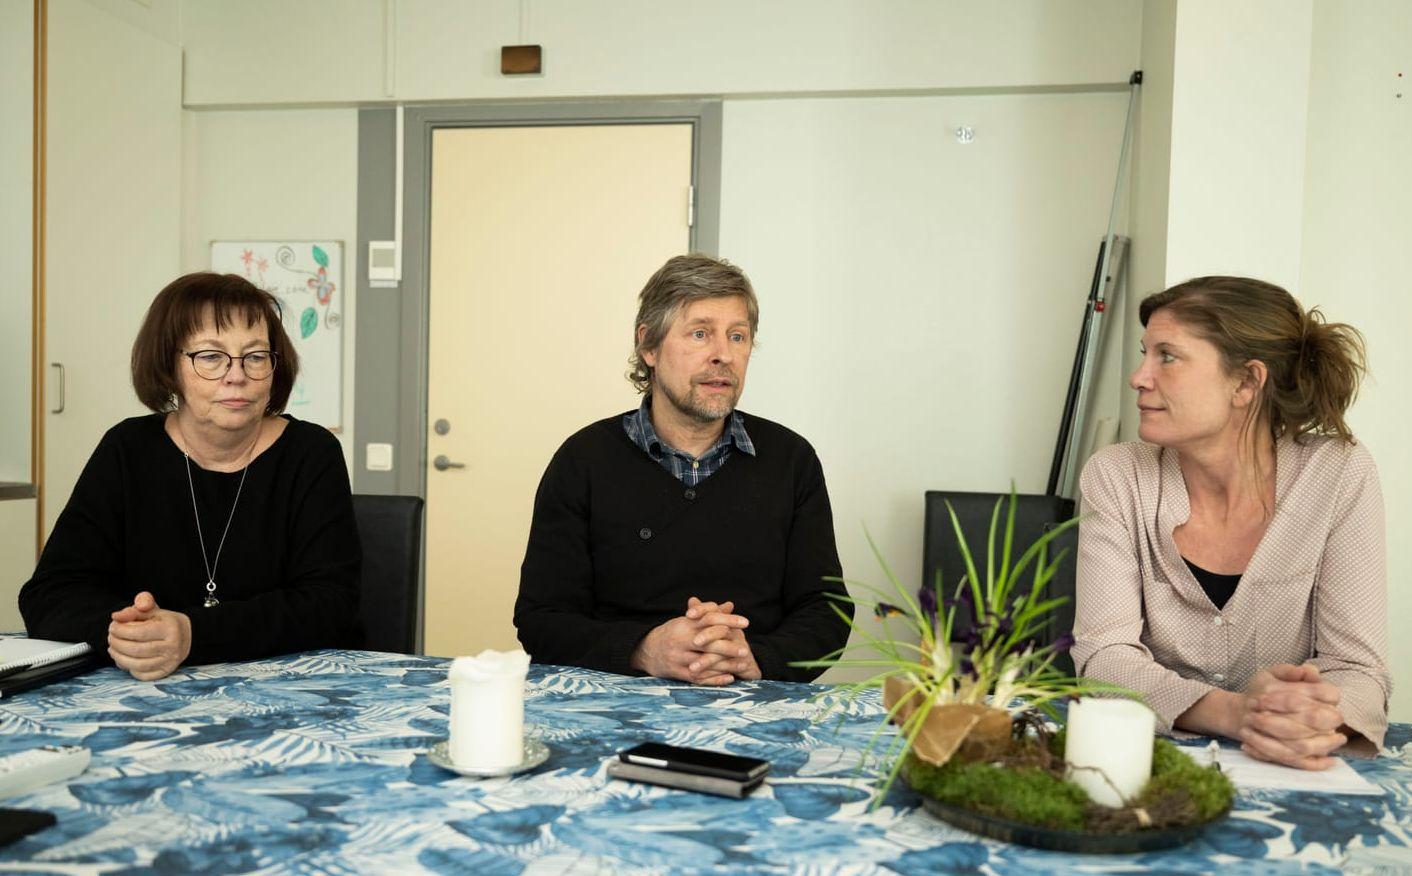 André Lange är med i forskargruppen för Raketstart. Kring bordet sitter hans kollegor från Ätstörningsmottagningen i Halmstad. 